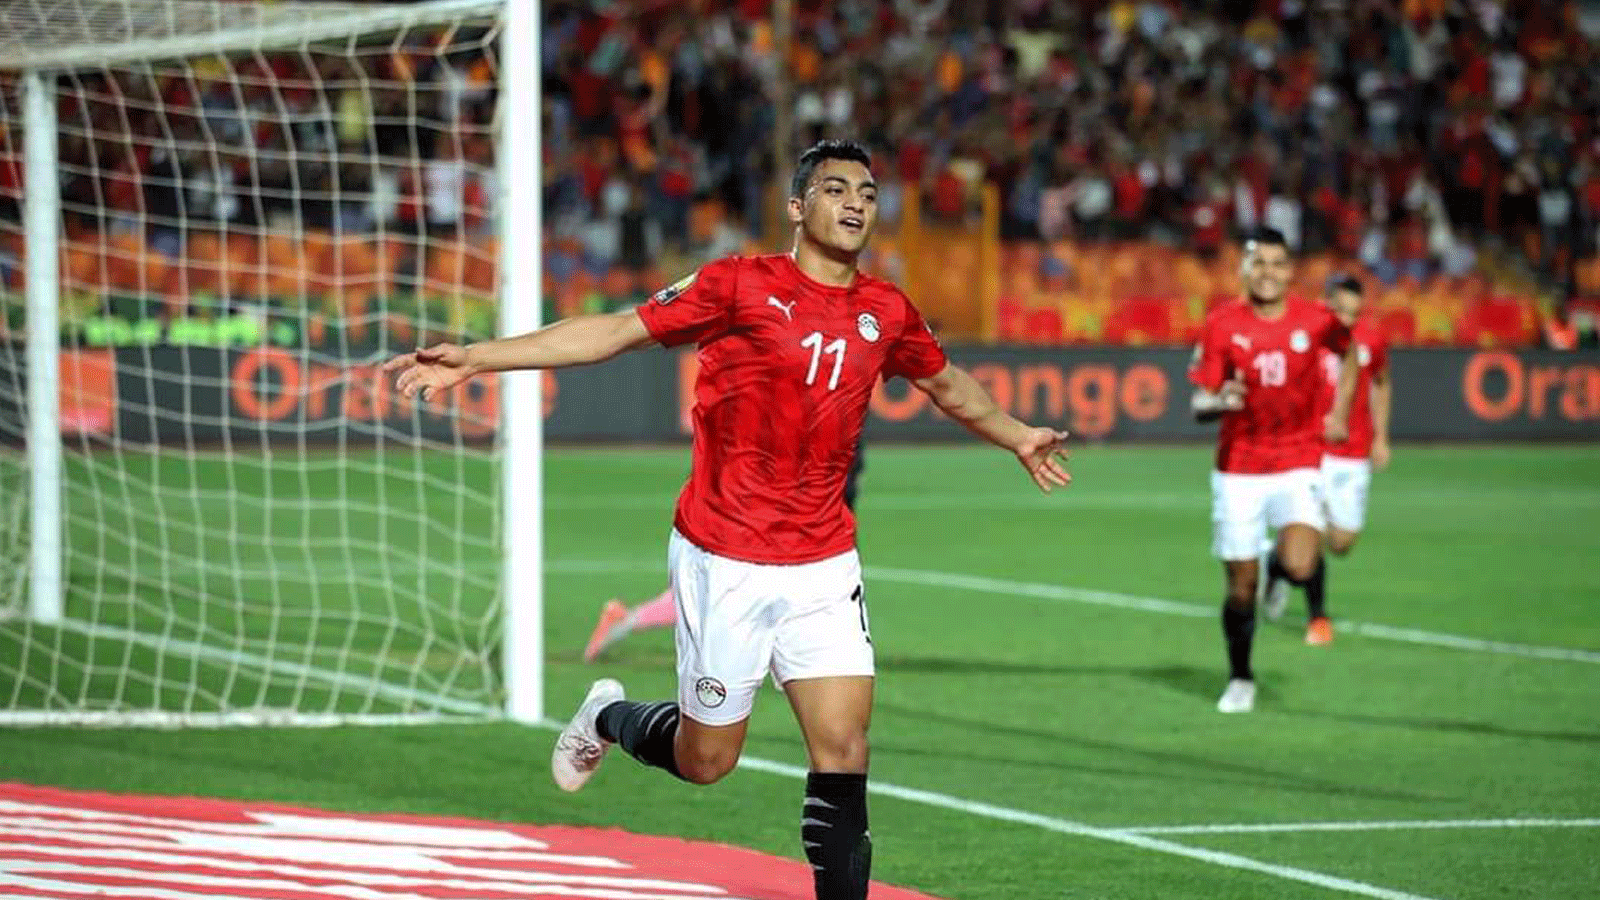 صورة متداولة على تويتر توثِّق اللحظة الاحتفالية للاعب المصري مصطفى محمد 